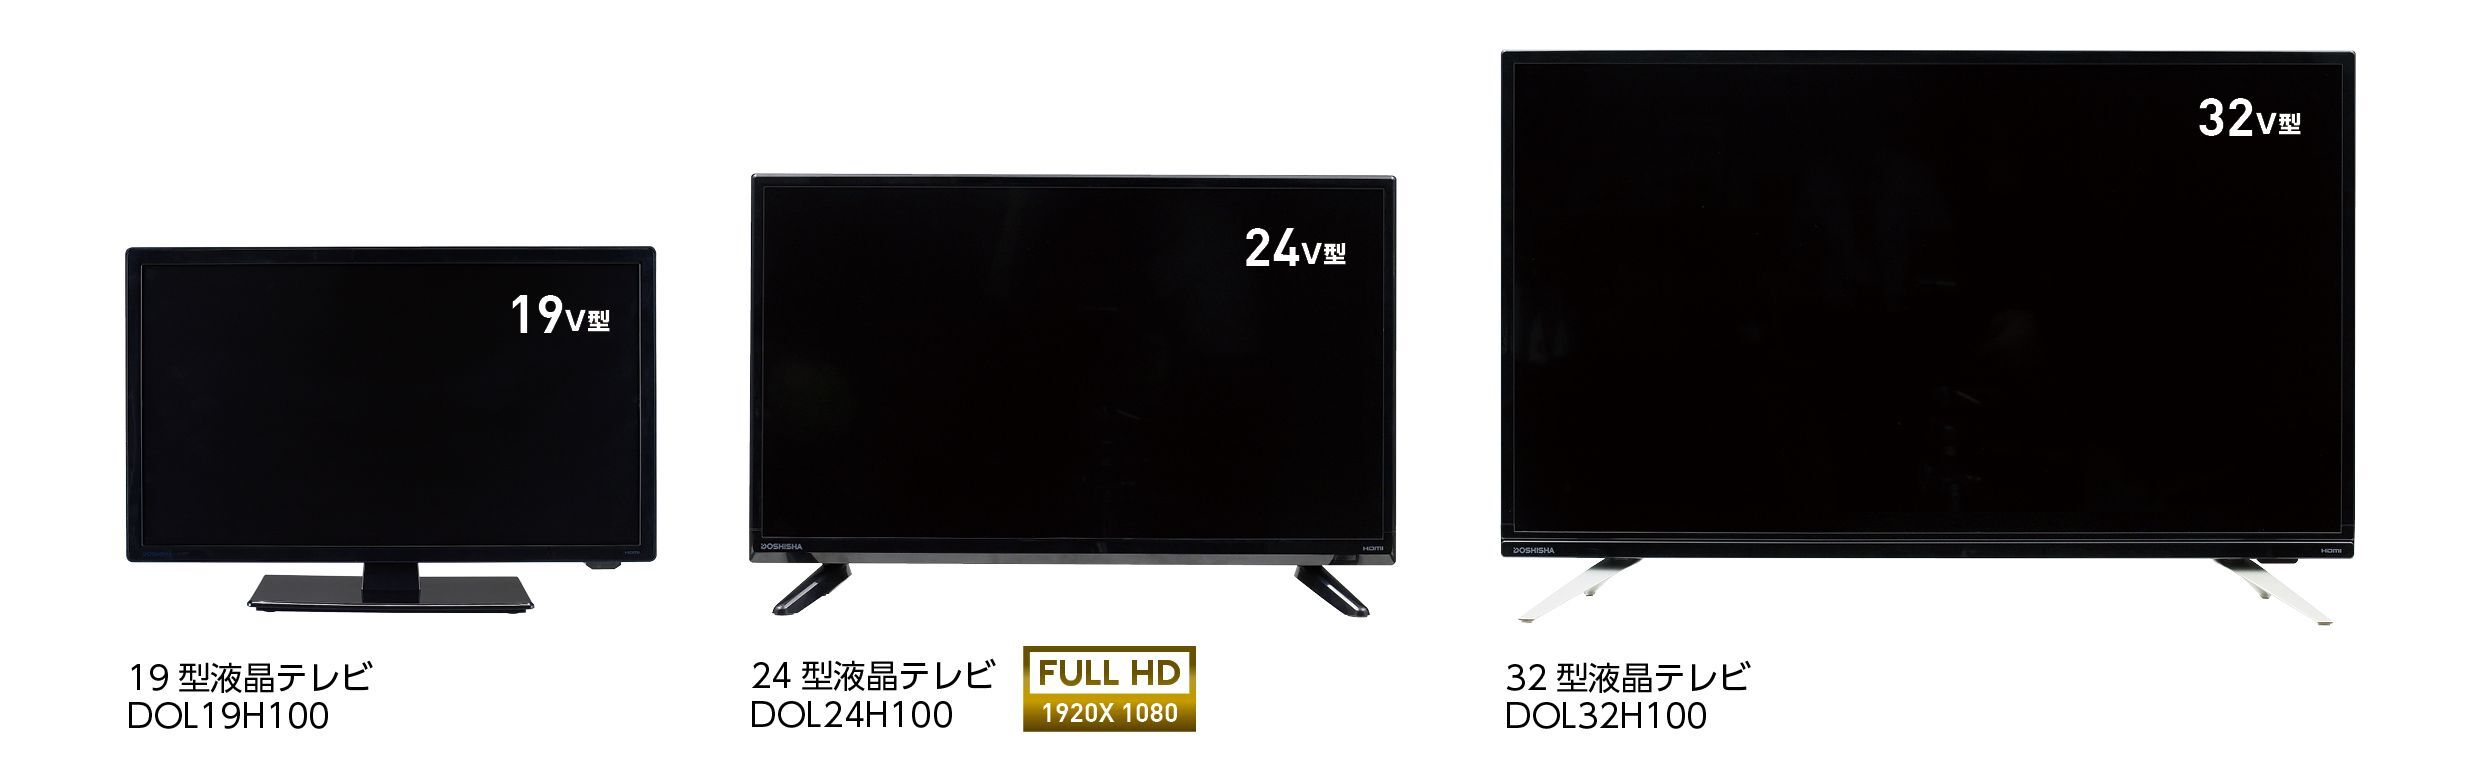 32型液晶テレビDOSHISHA製 - 液晶テレビ